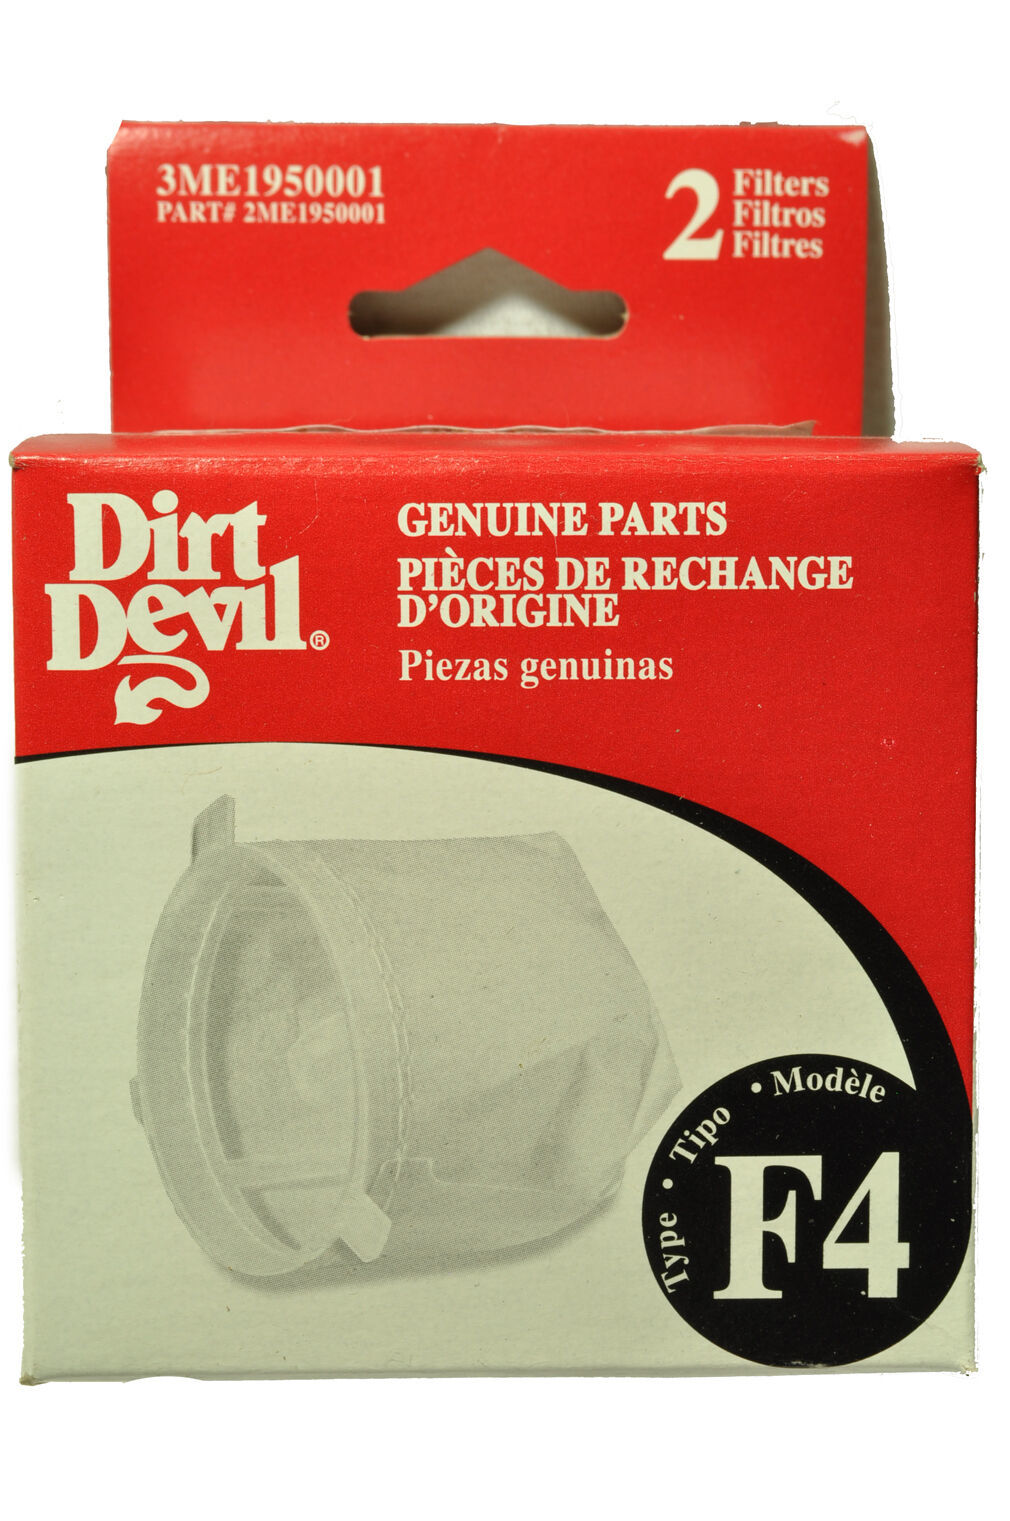 Dirt Devil Type F4 Filter Bag, 3ME1950001,RO-ME1950 - $9.95